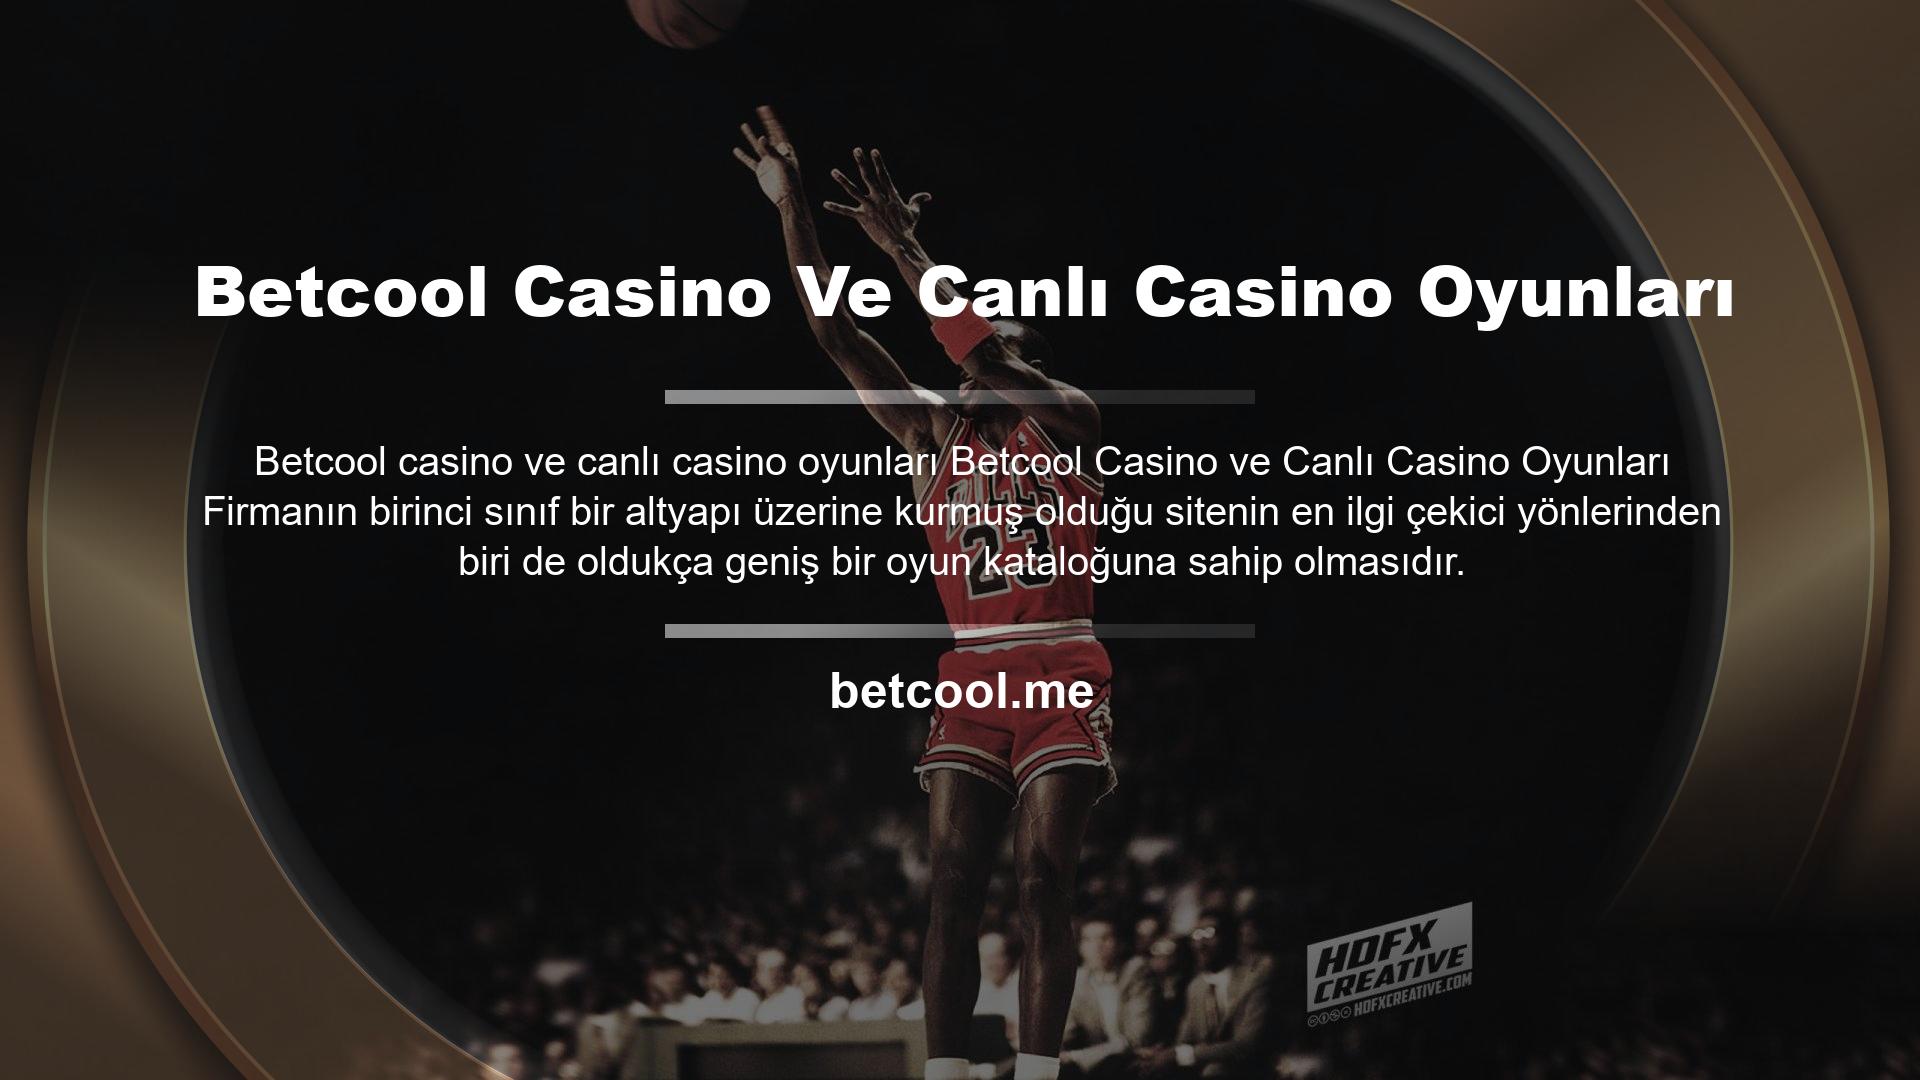 Betcool casino oyunları söz konusu olduğunda da bunu sunuyor ve oldukça geniş bir oyun portföyüne sahip